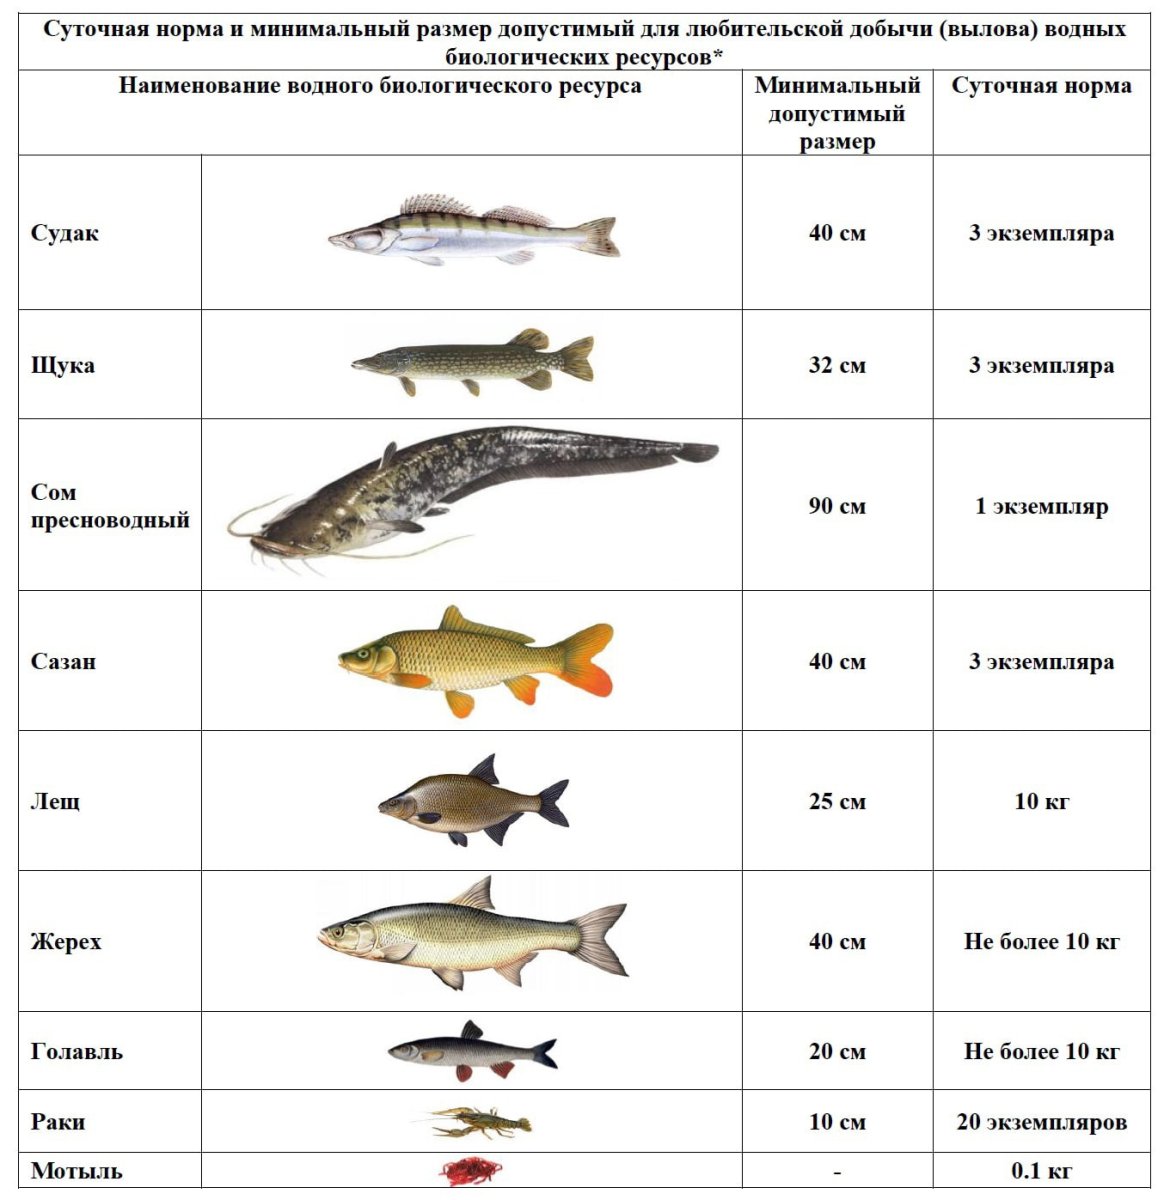 Нормы лова. Разрешенный размер судака. Таблица размеров допустимый пойманной рыбы. Разрешённый размер рыбы для вылова в Московской области 2021. Размер судака разрешенный к вылову.